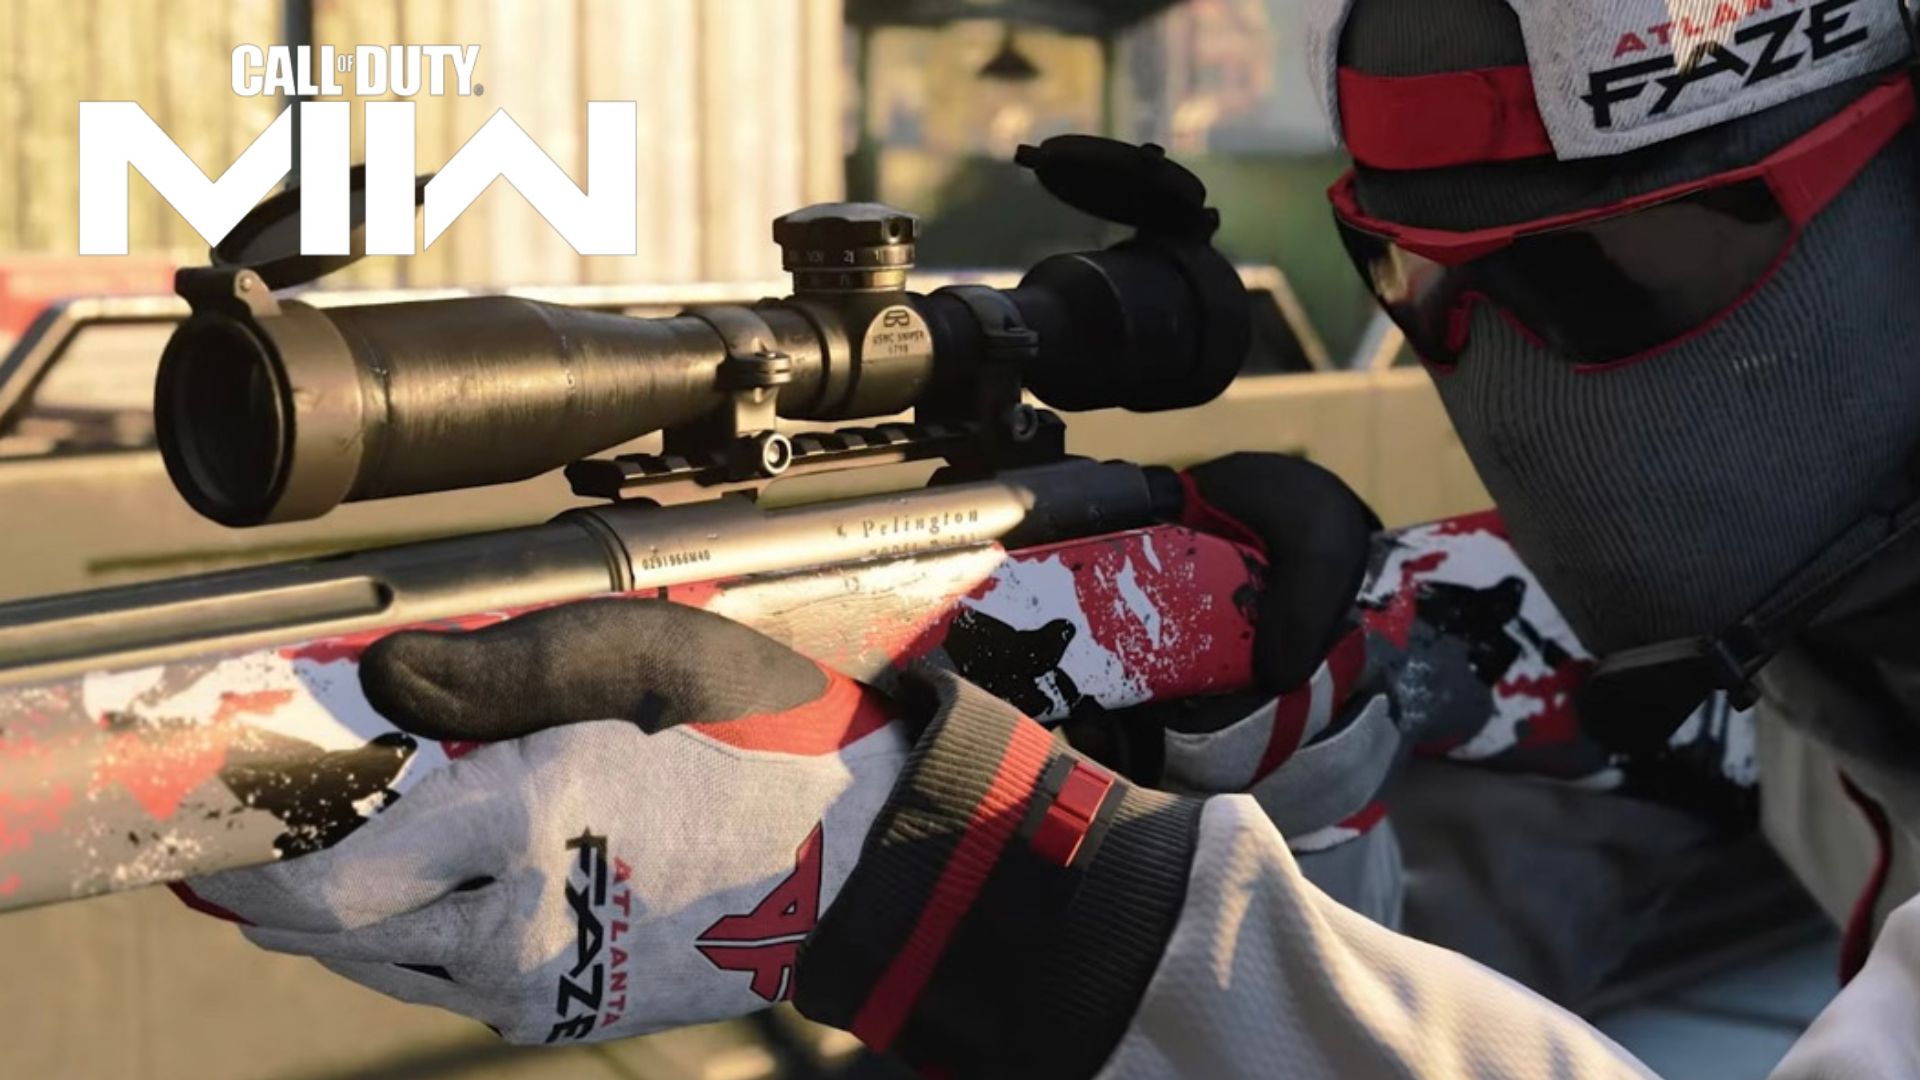 ตัวละคร Call of Duty ใน Atlanta Faze Skin กับ Sniper